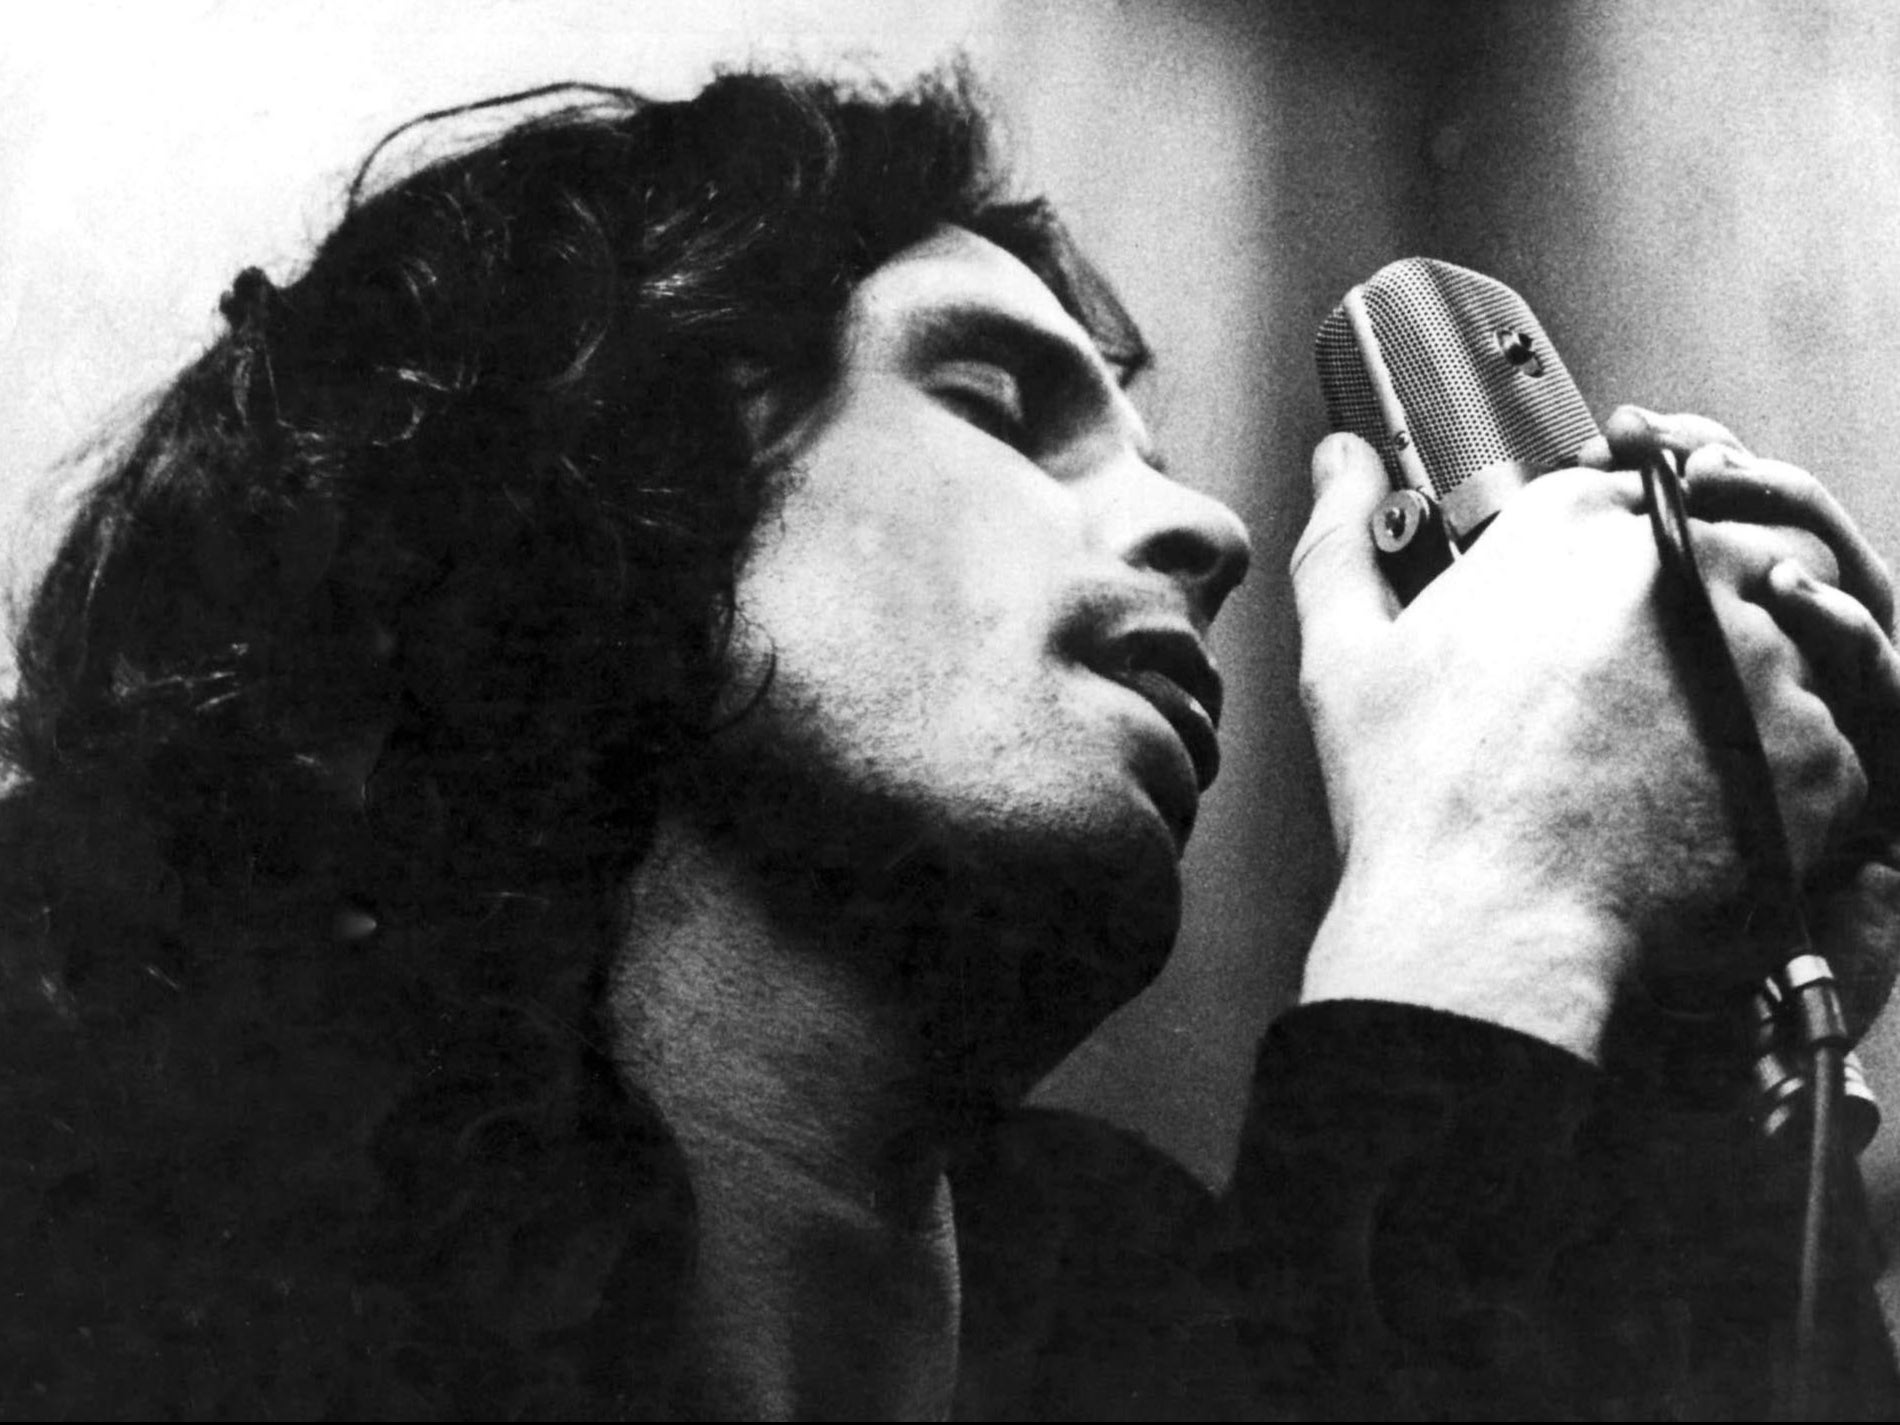 Jim Morrison performing in 1968